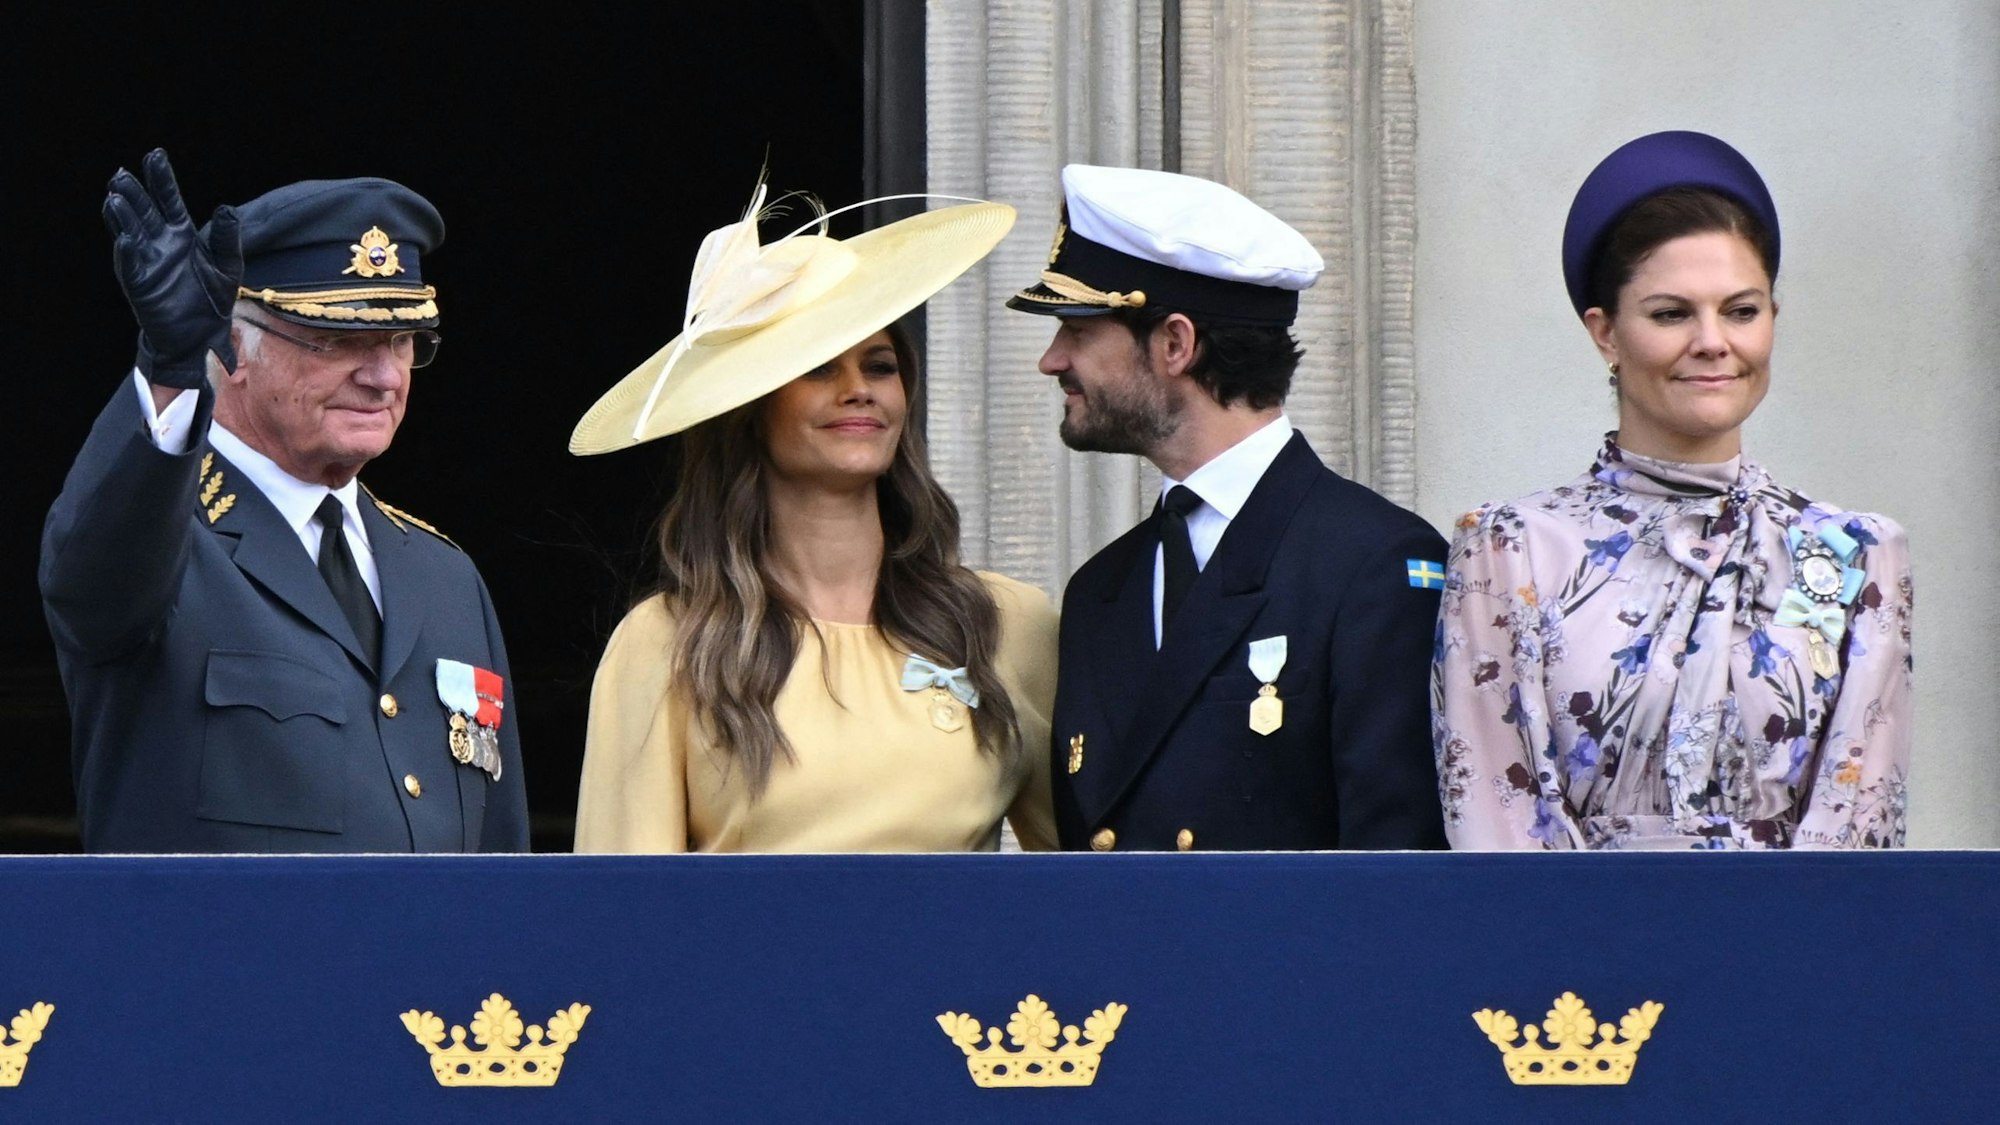 König Carl XVI. Gustaf, Prinzessin Sofia, Prinz Carl Philip und Kronprinzessin Victoria auf dem Balkon nach der Ablösung der königlichen Garde im Äußeren Hof anlässlich des 50. Jahrestages der Thronbesteigung von König Carl XVI. Gustaf im September 2023.